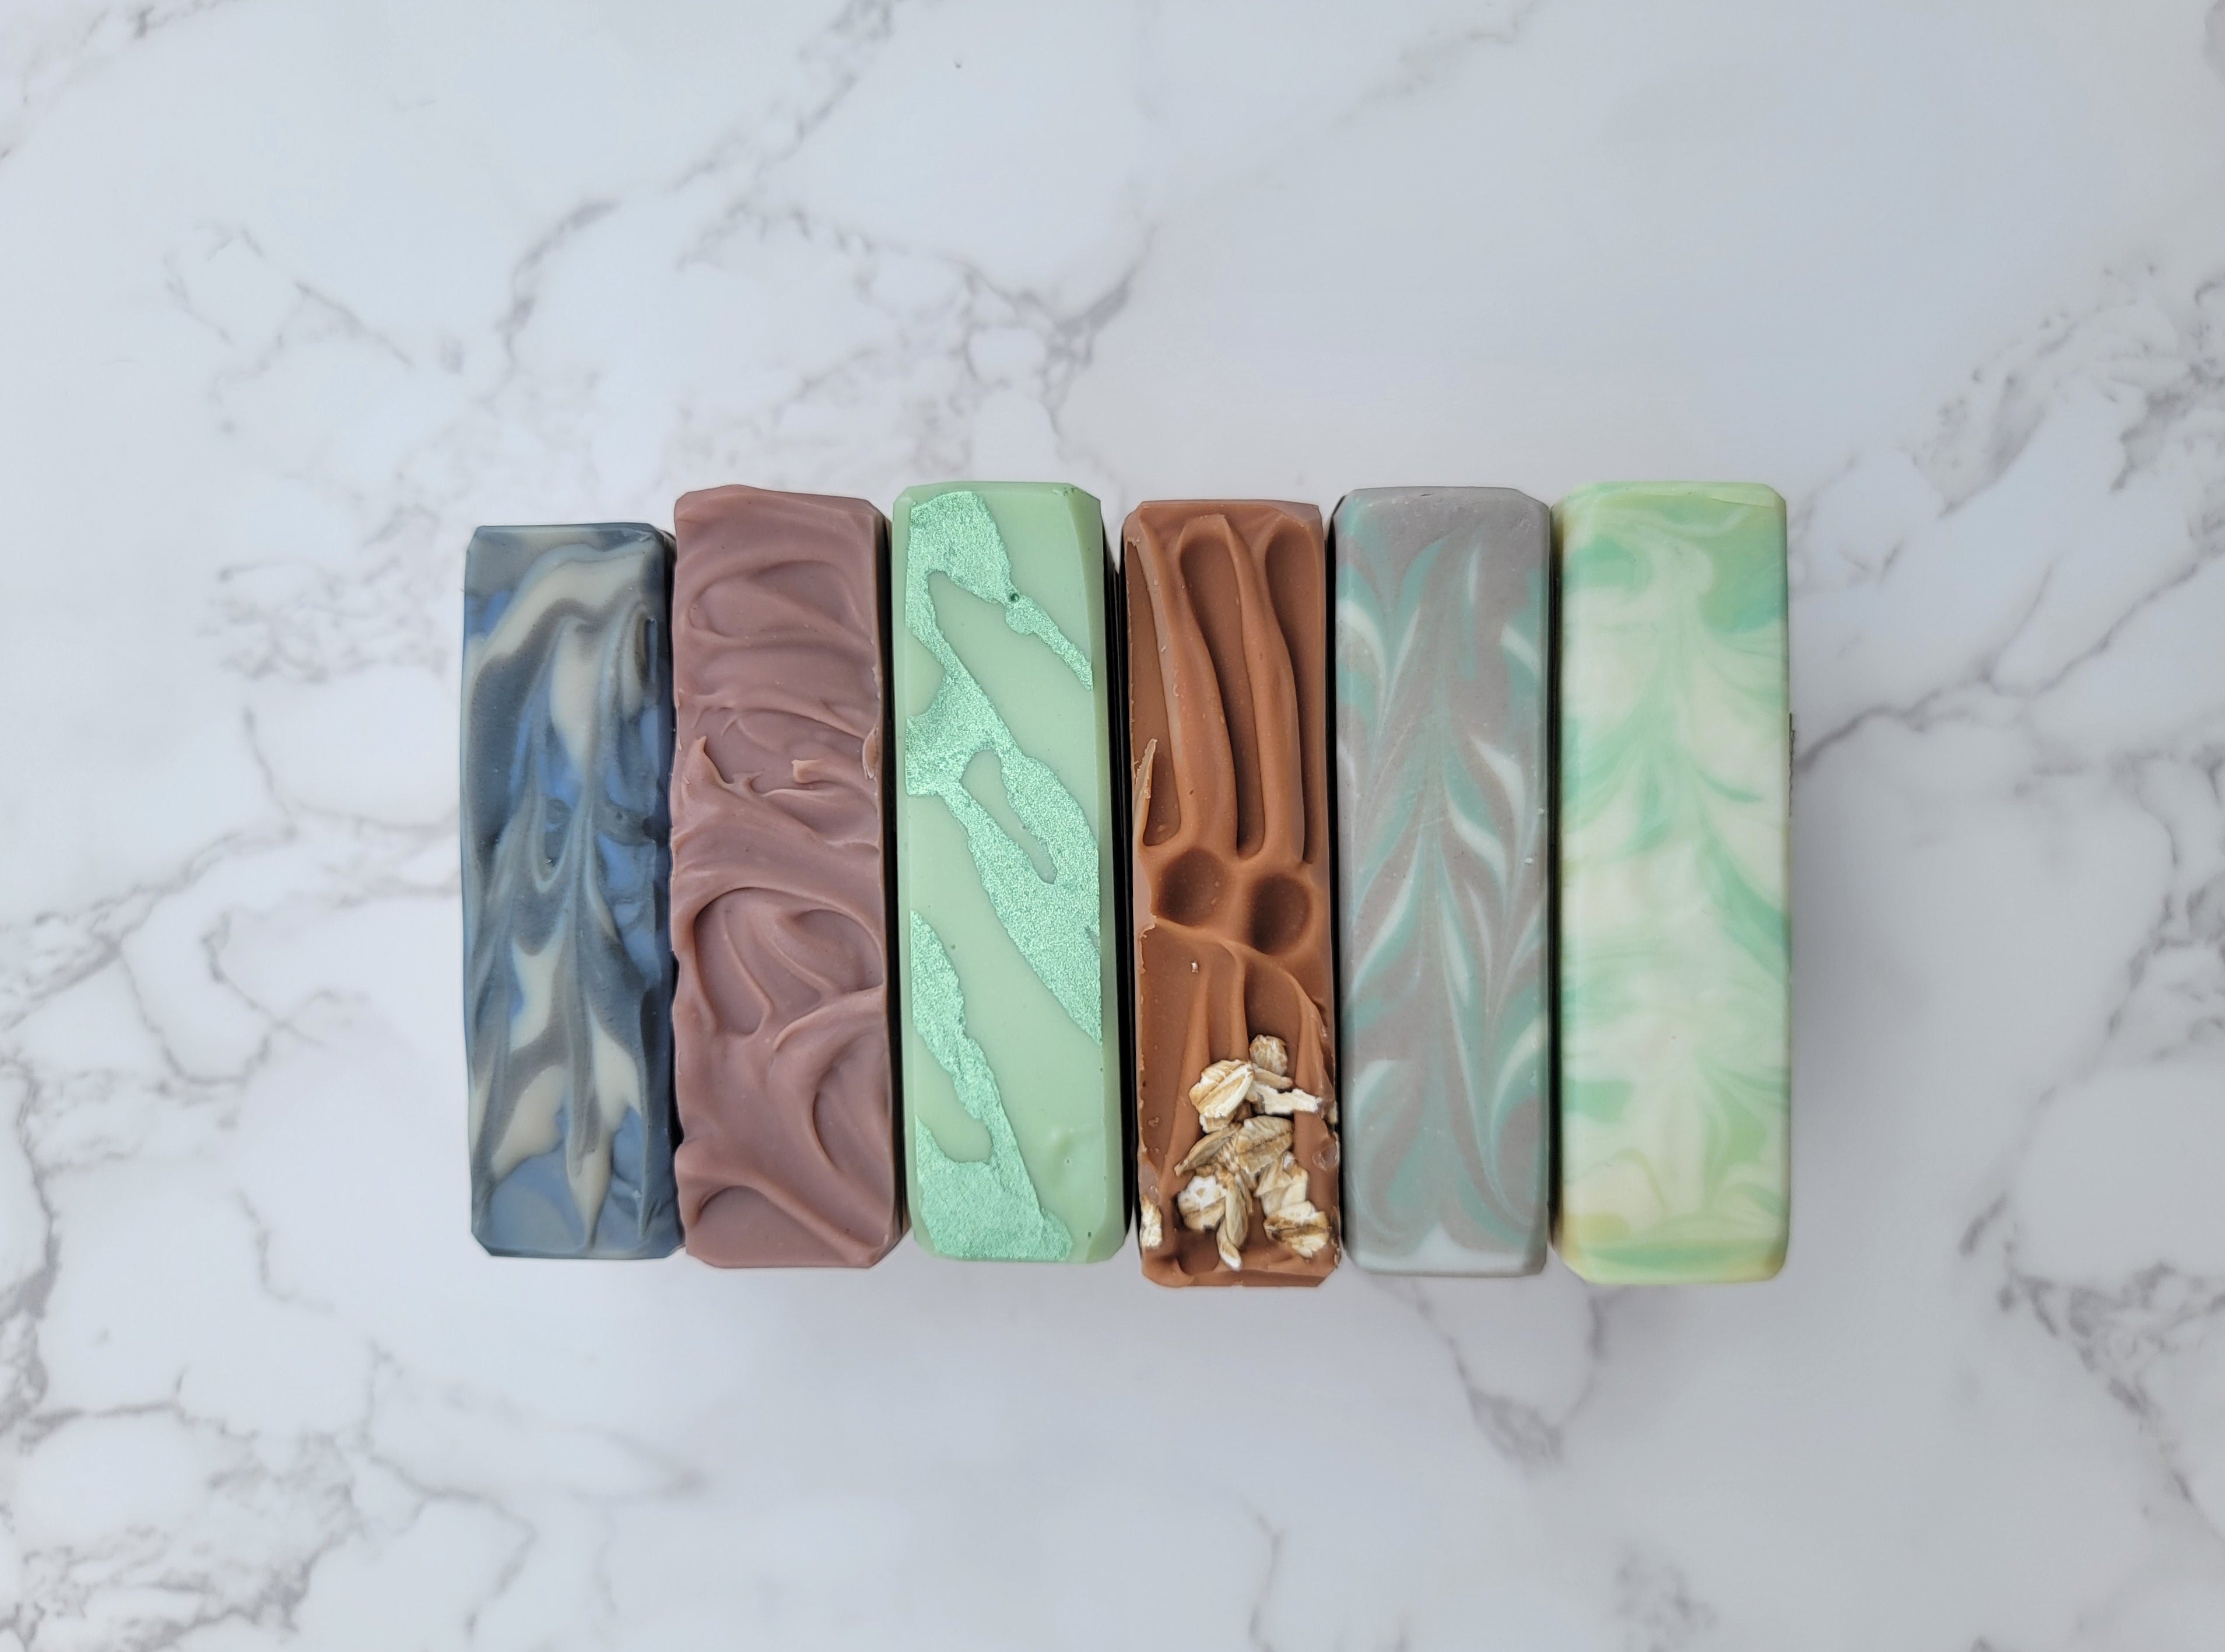 Row of handmade soap bars